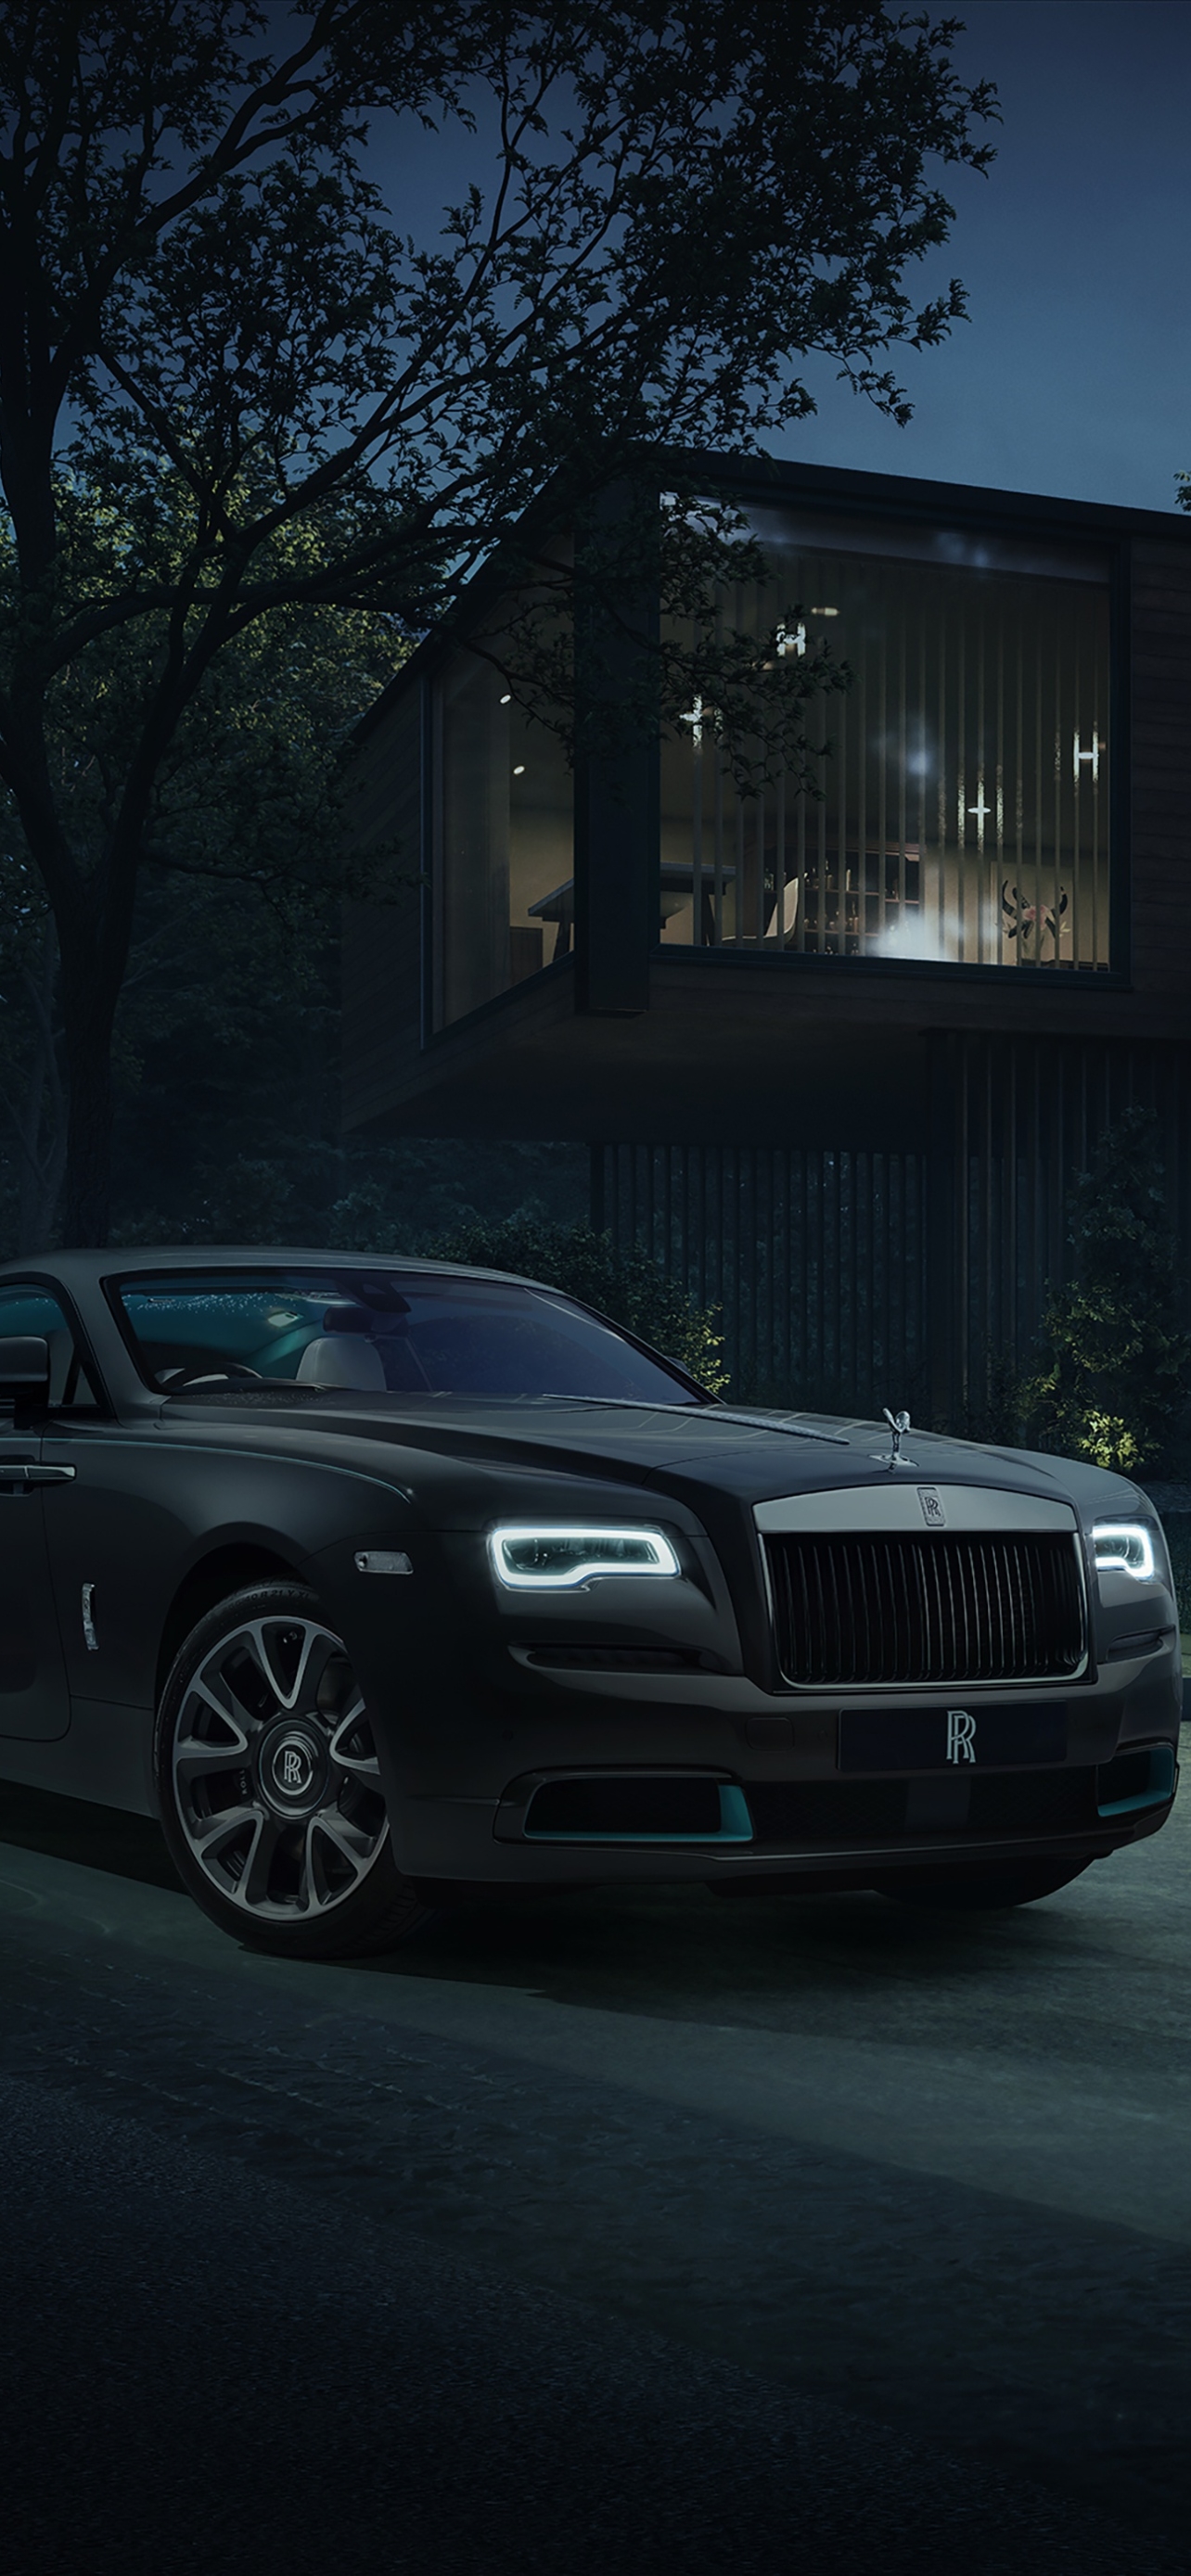 Descarga gratuita de fondo de pantalla para móvil de Rolls Royce, Coche, Rolls Royce Fantasma, Vehículos, Coche Negro.